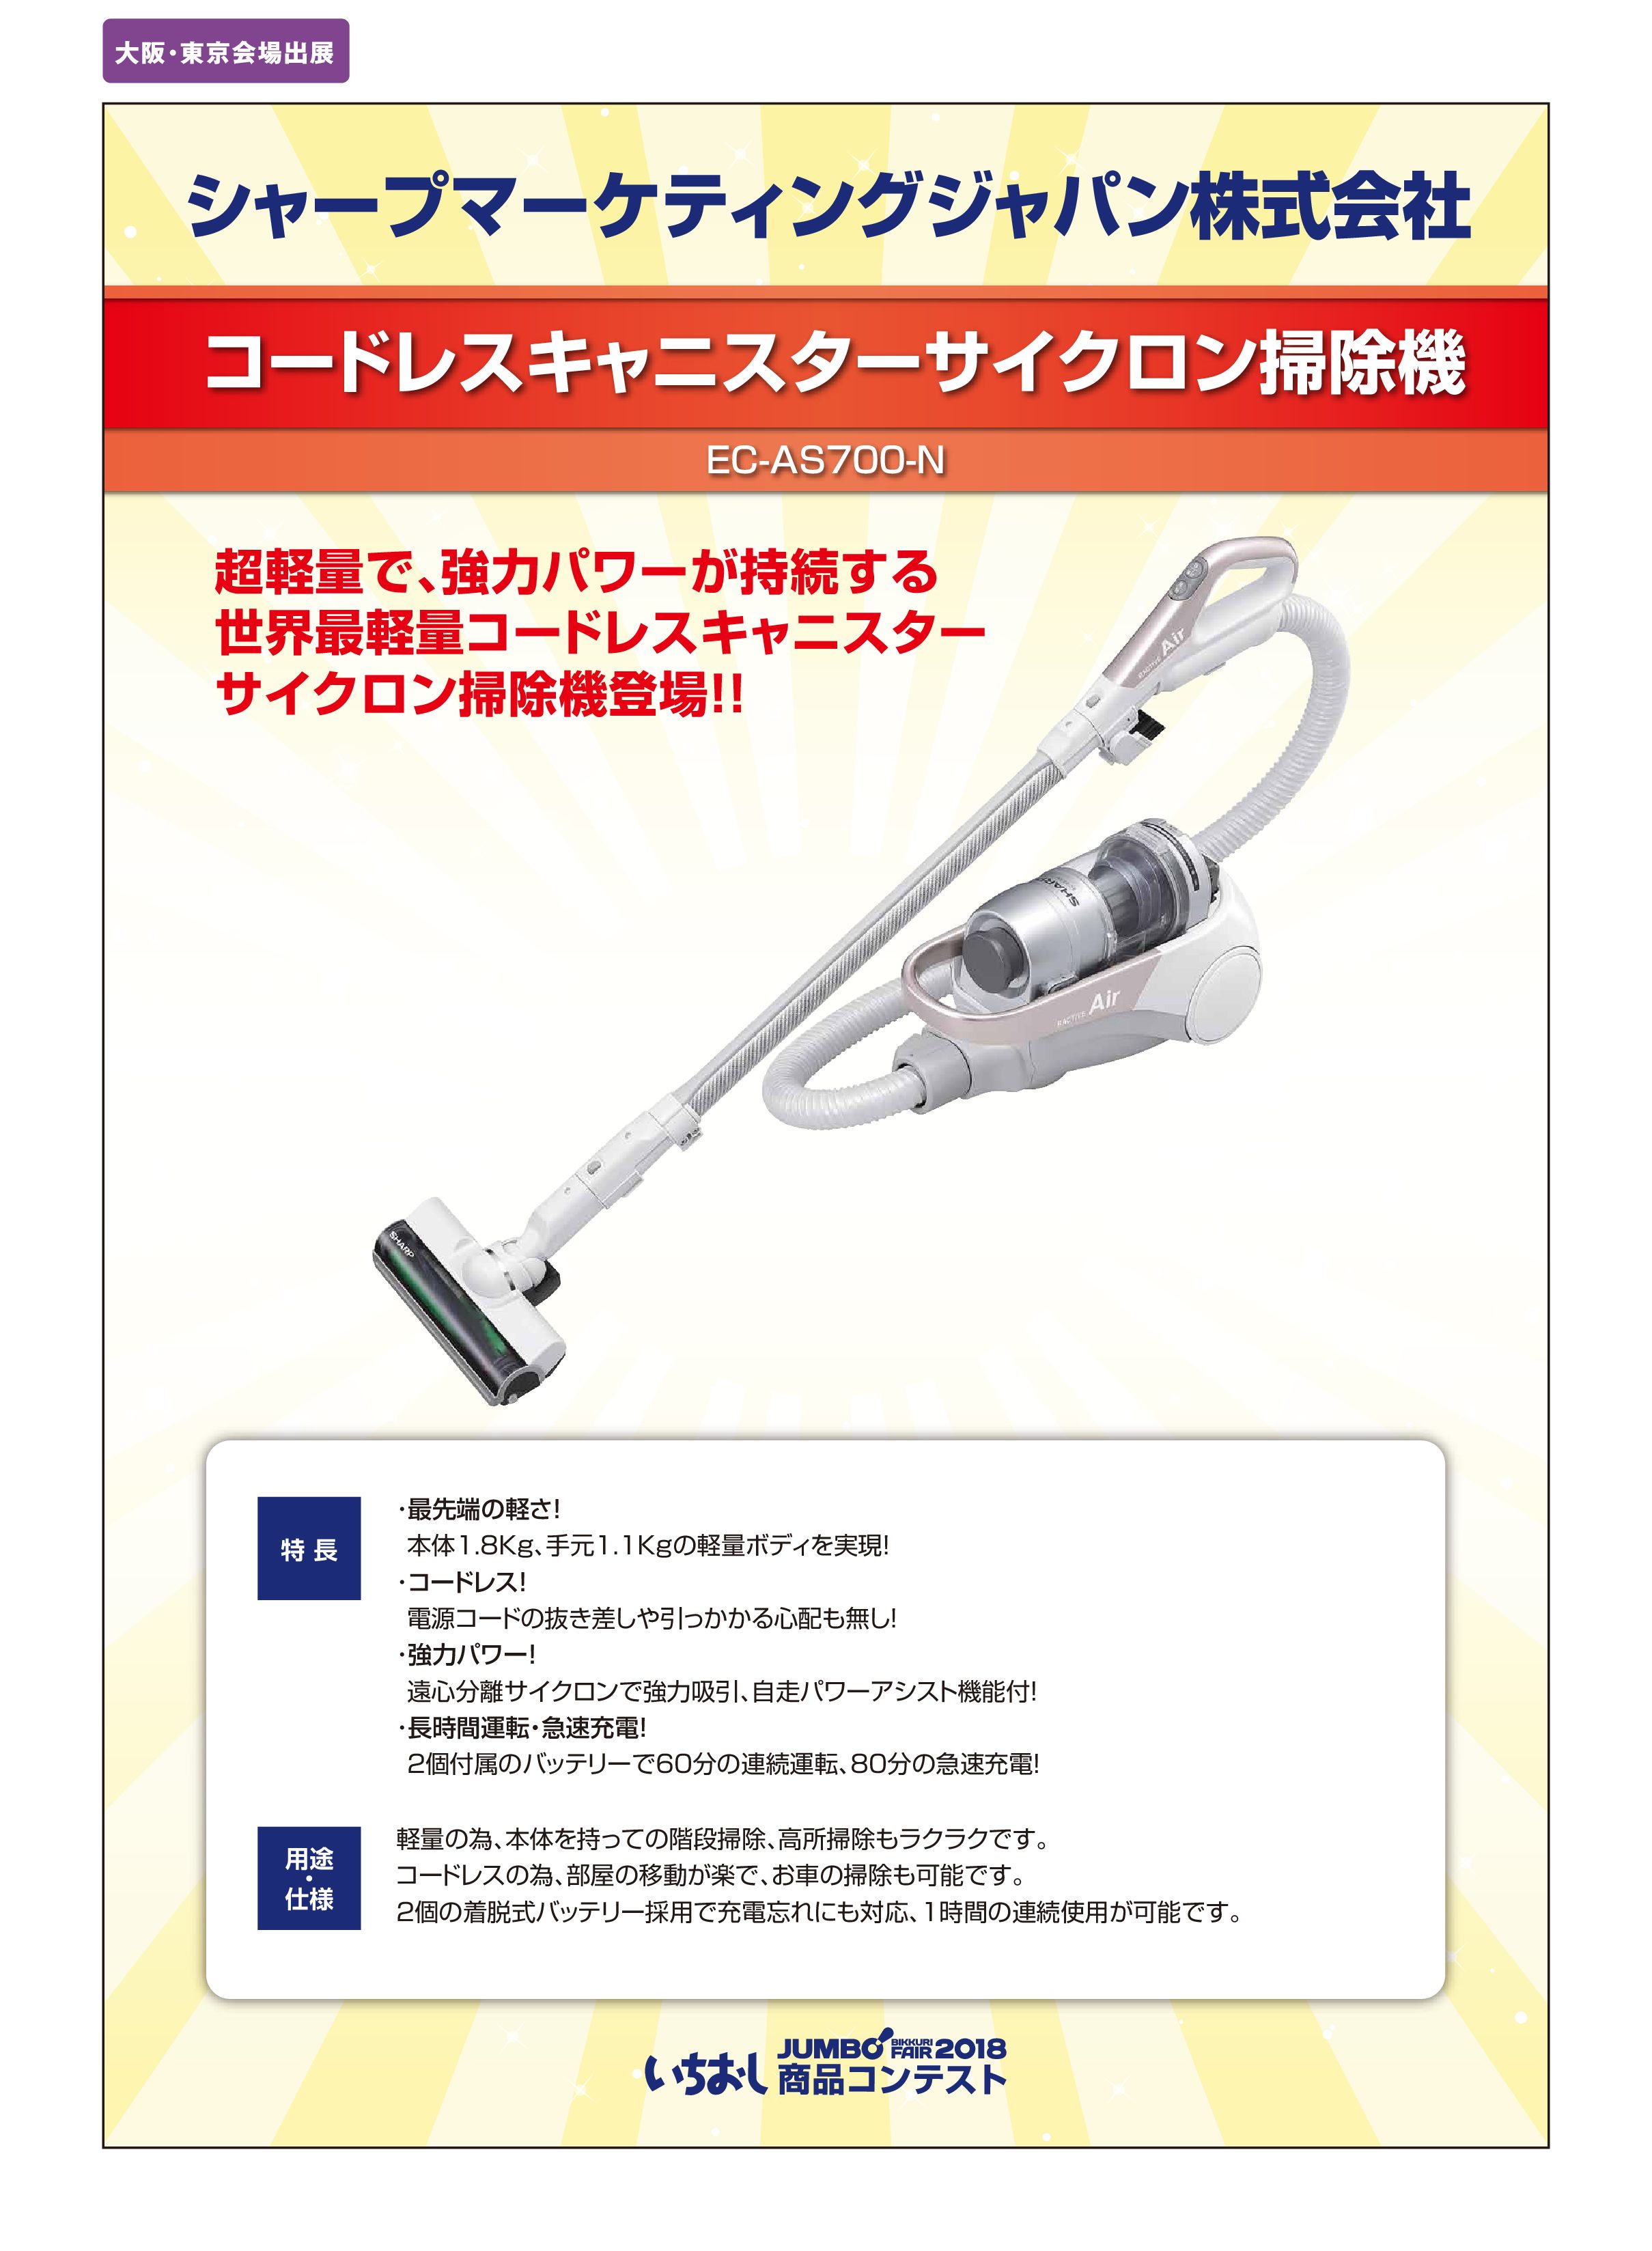 「コードレスキャニスターサイクロン掃除機」シャープマーケティングジャパン株式会社の画像